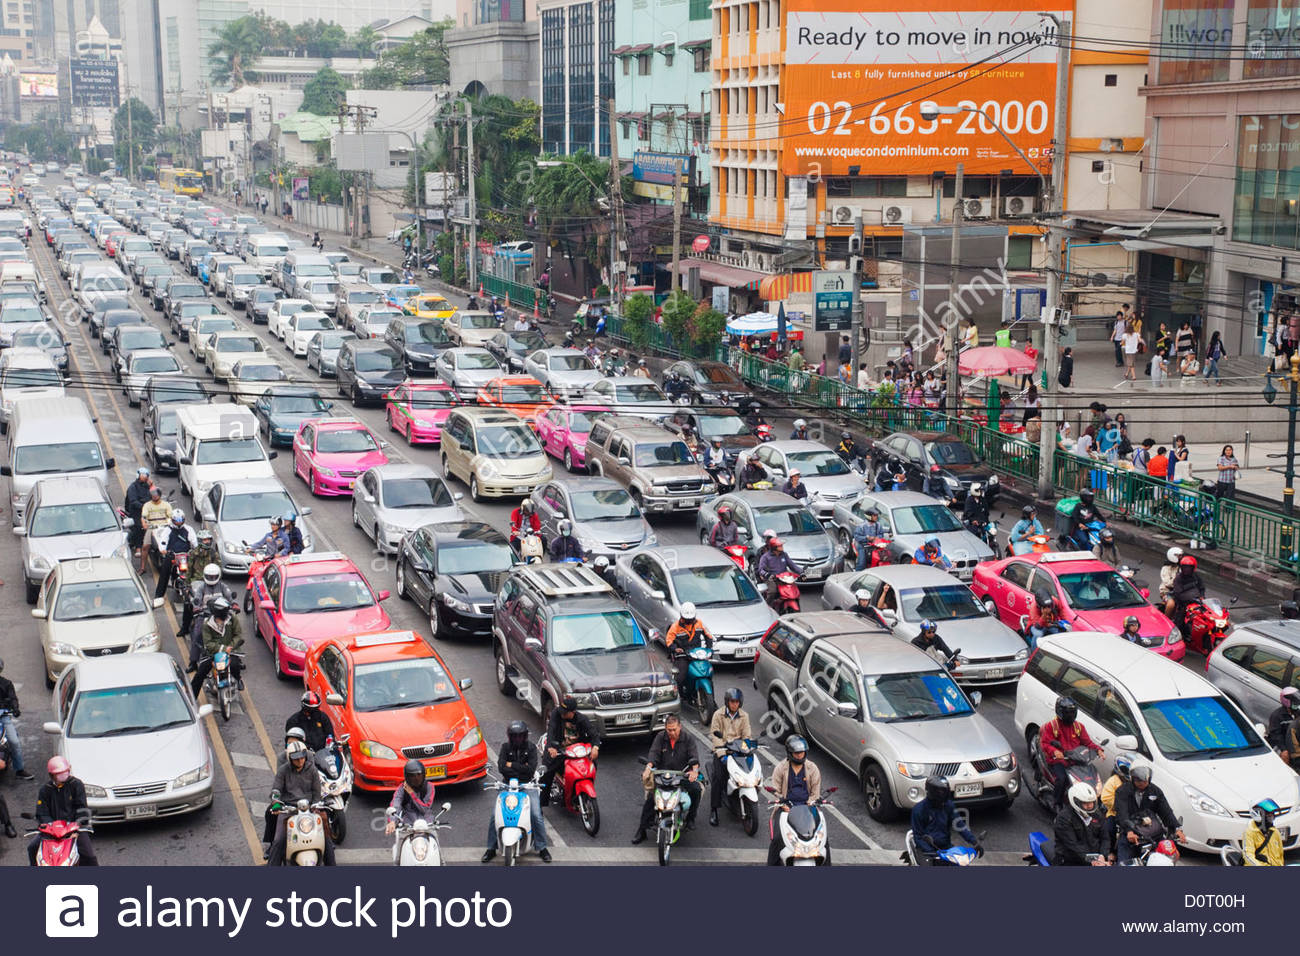 TP Hồ Chí Minh điều chỉnh tổ chức giao thông để giảm kẹt xe  Giao thông   Vietnam VietnamPlus